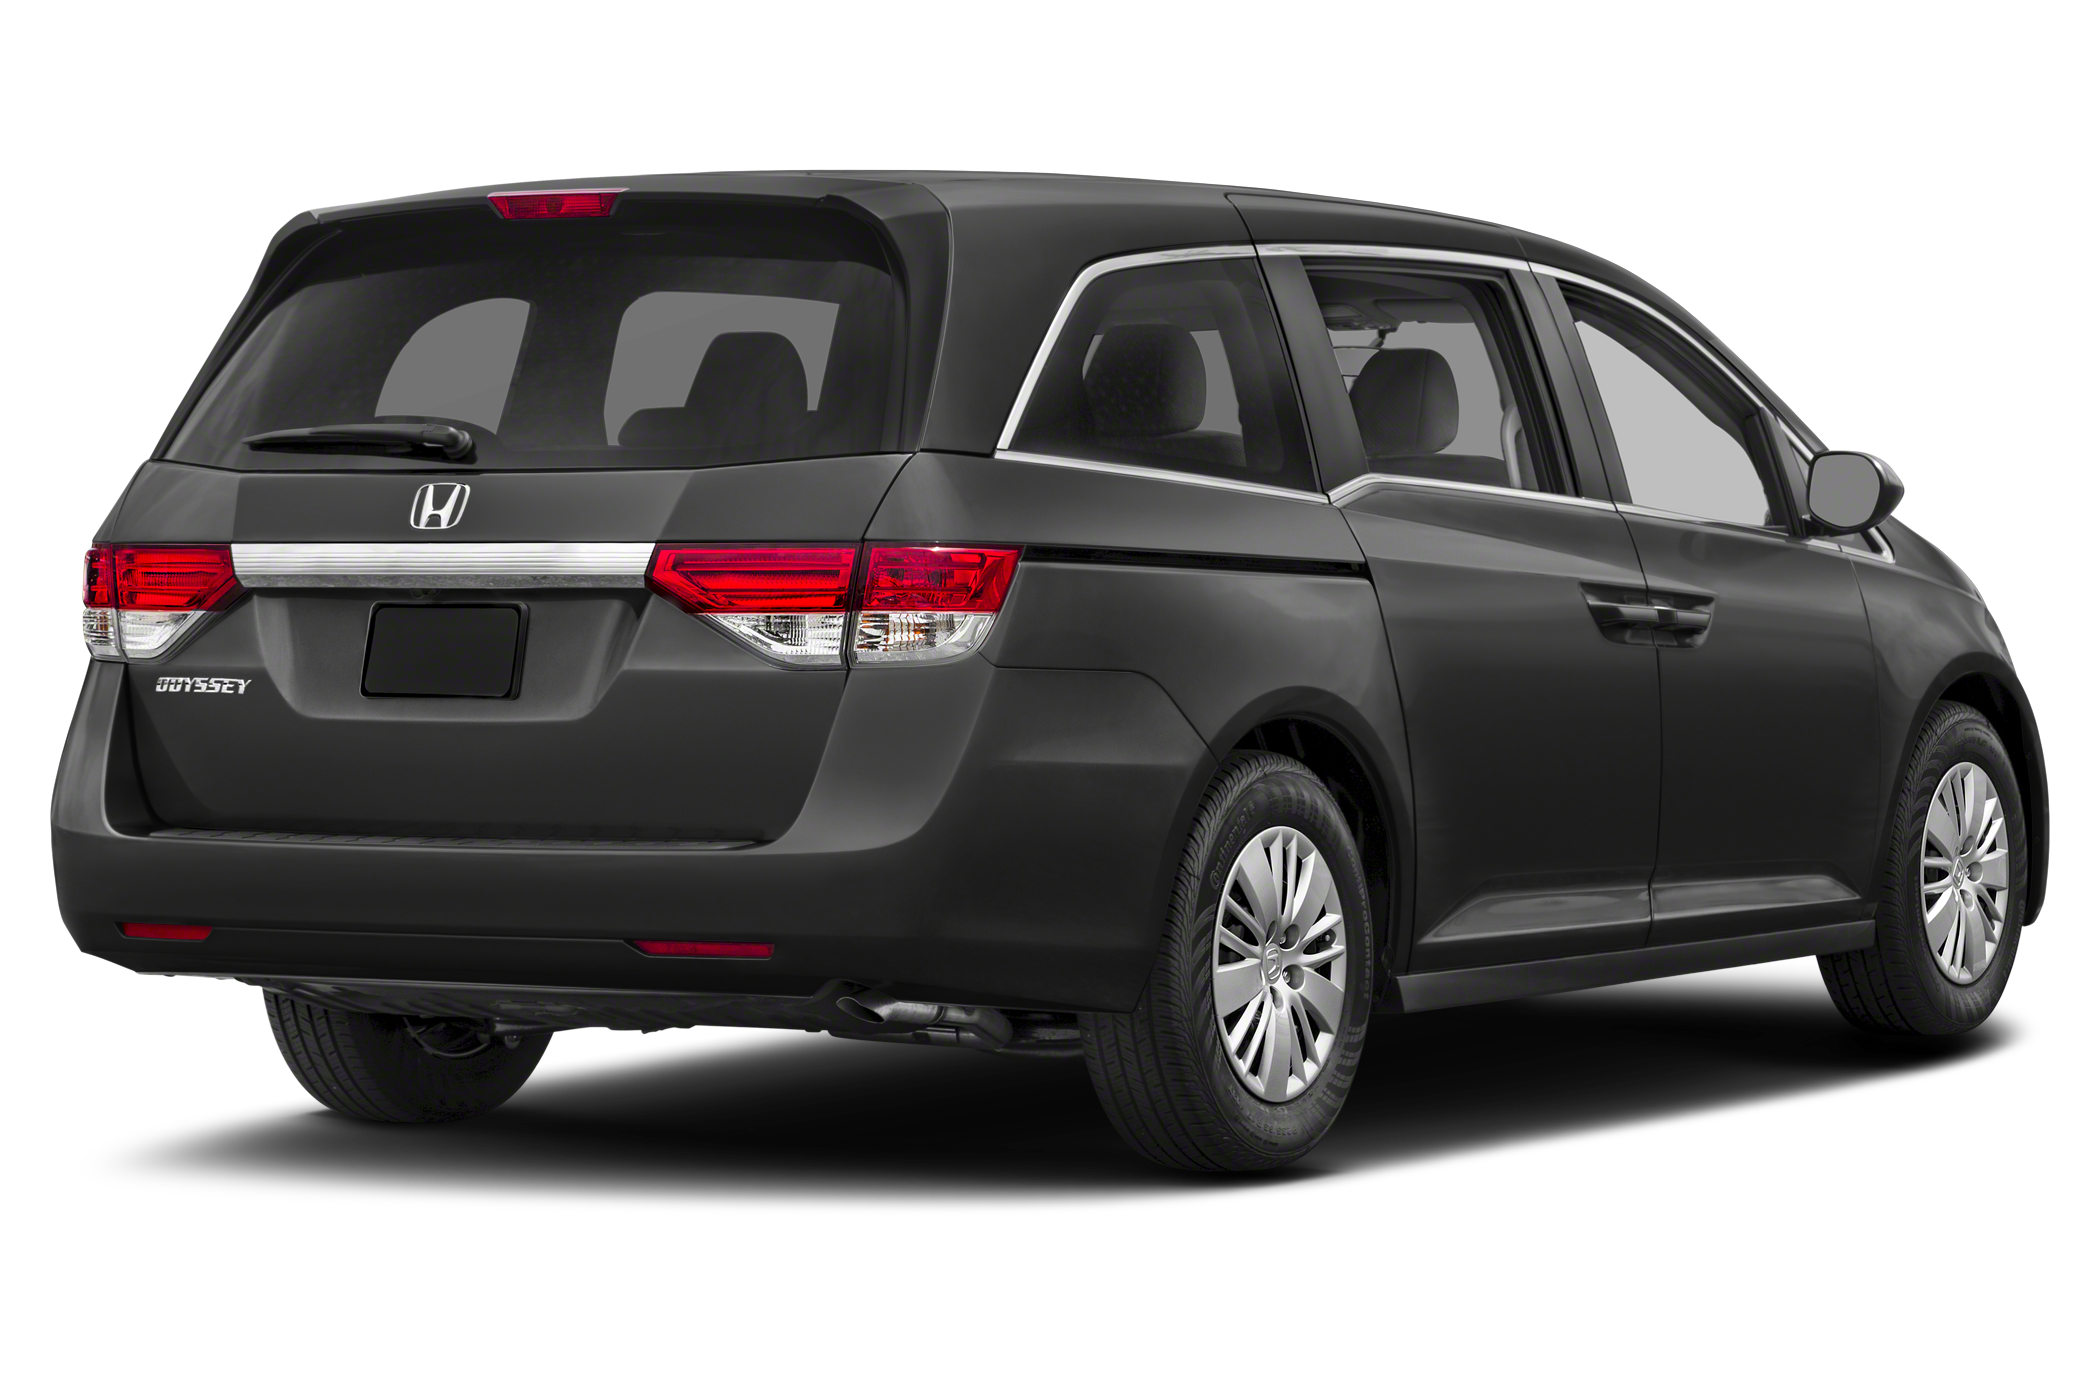 2017 Honda Odyssey